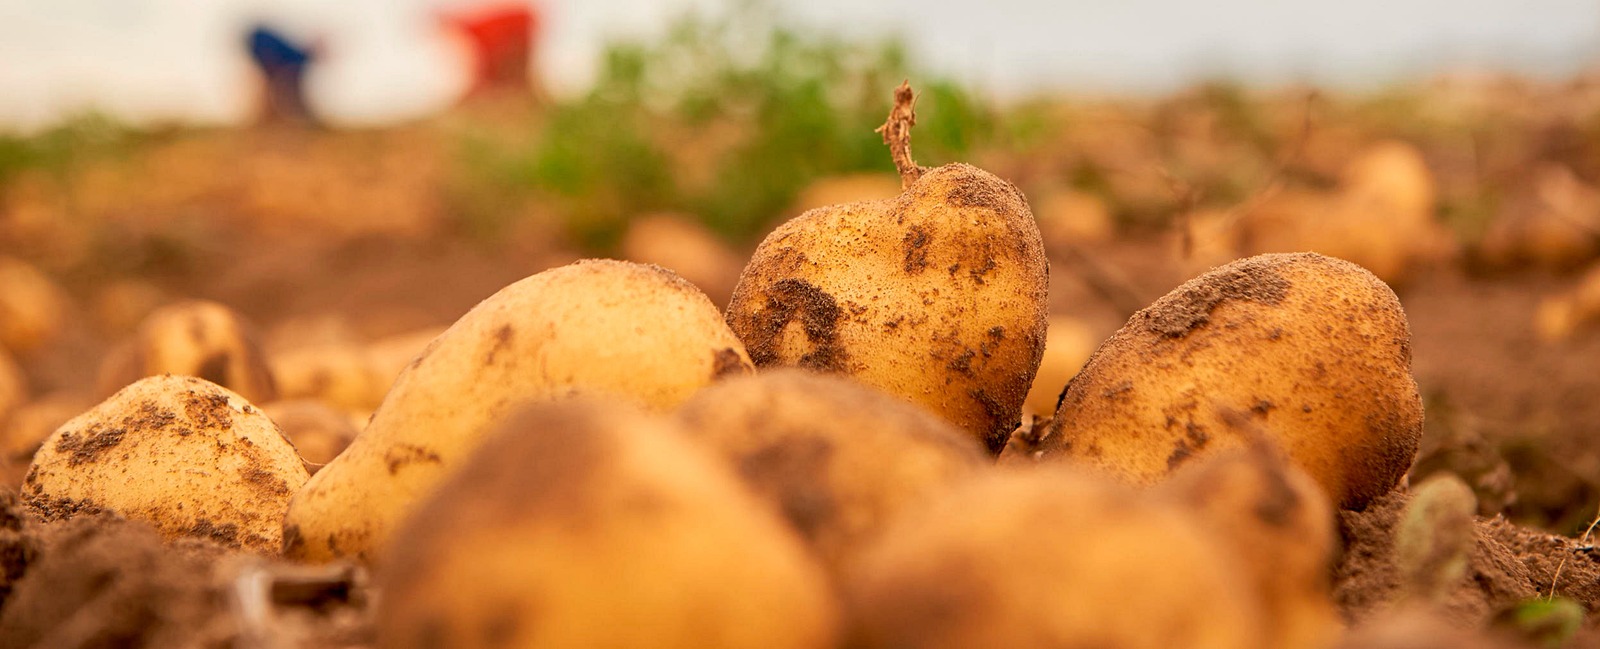 Ruolo del rame nella produzione di patate